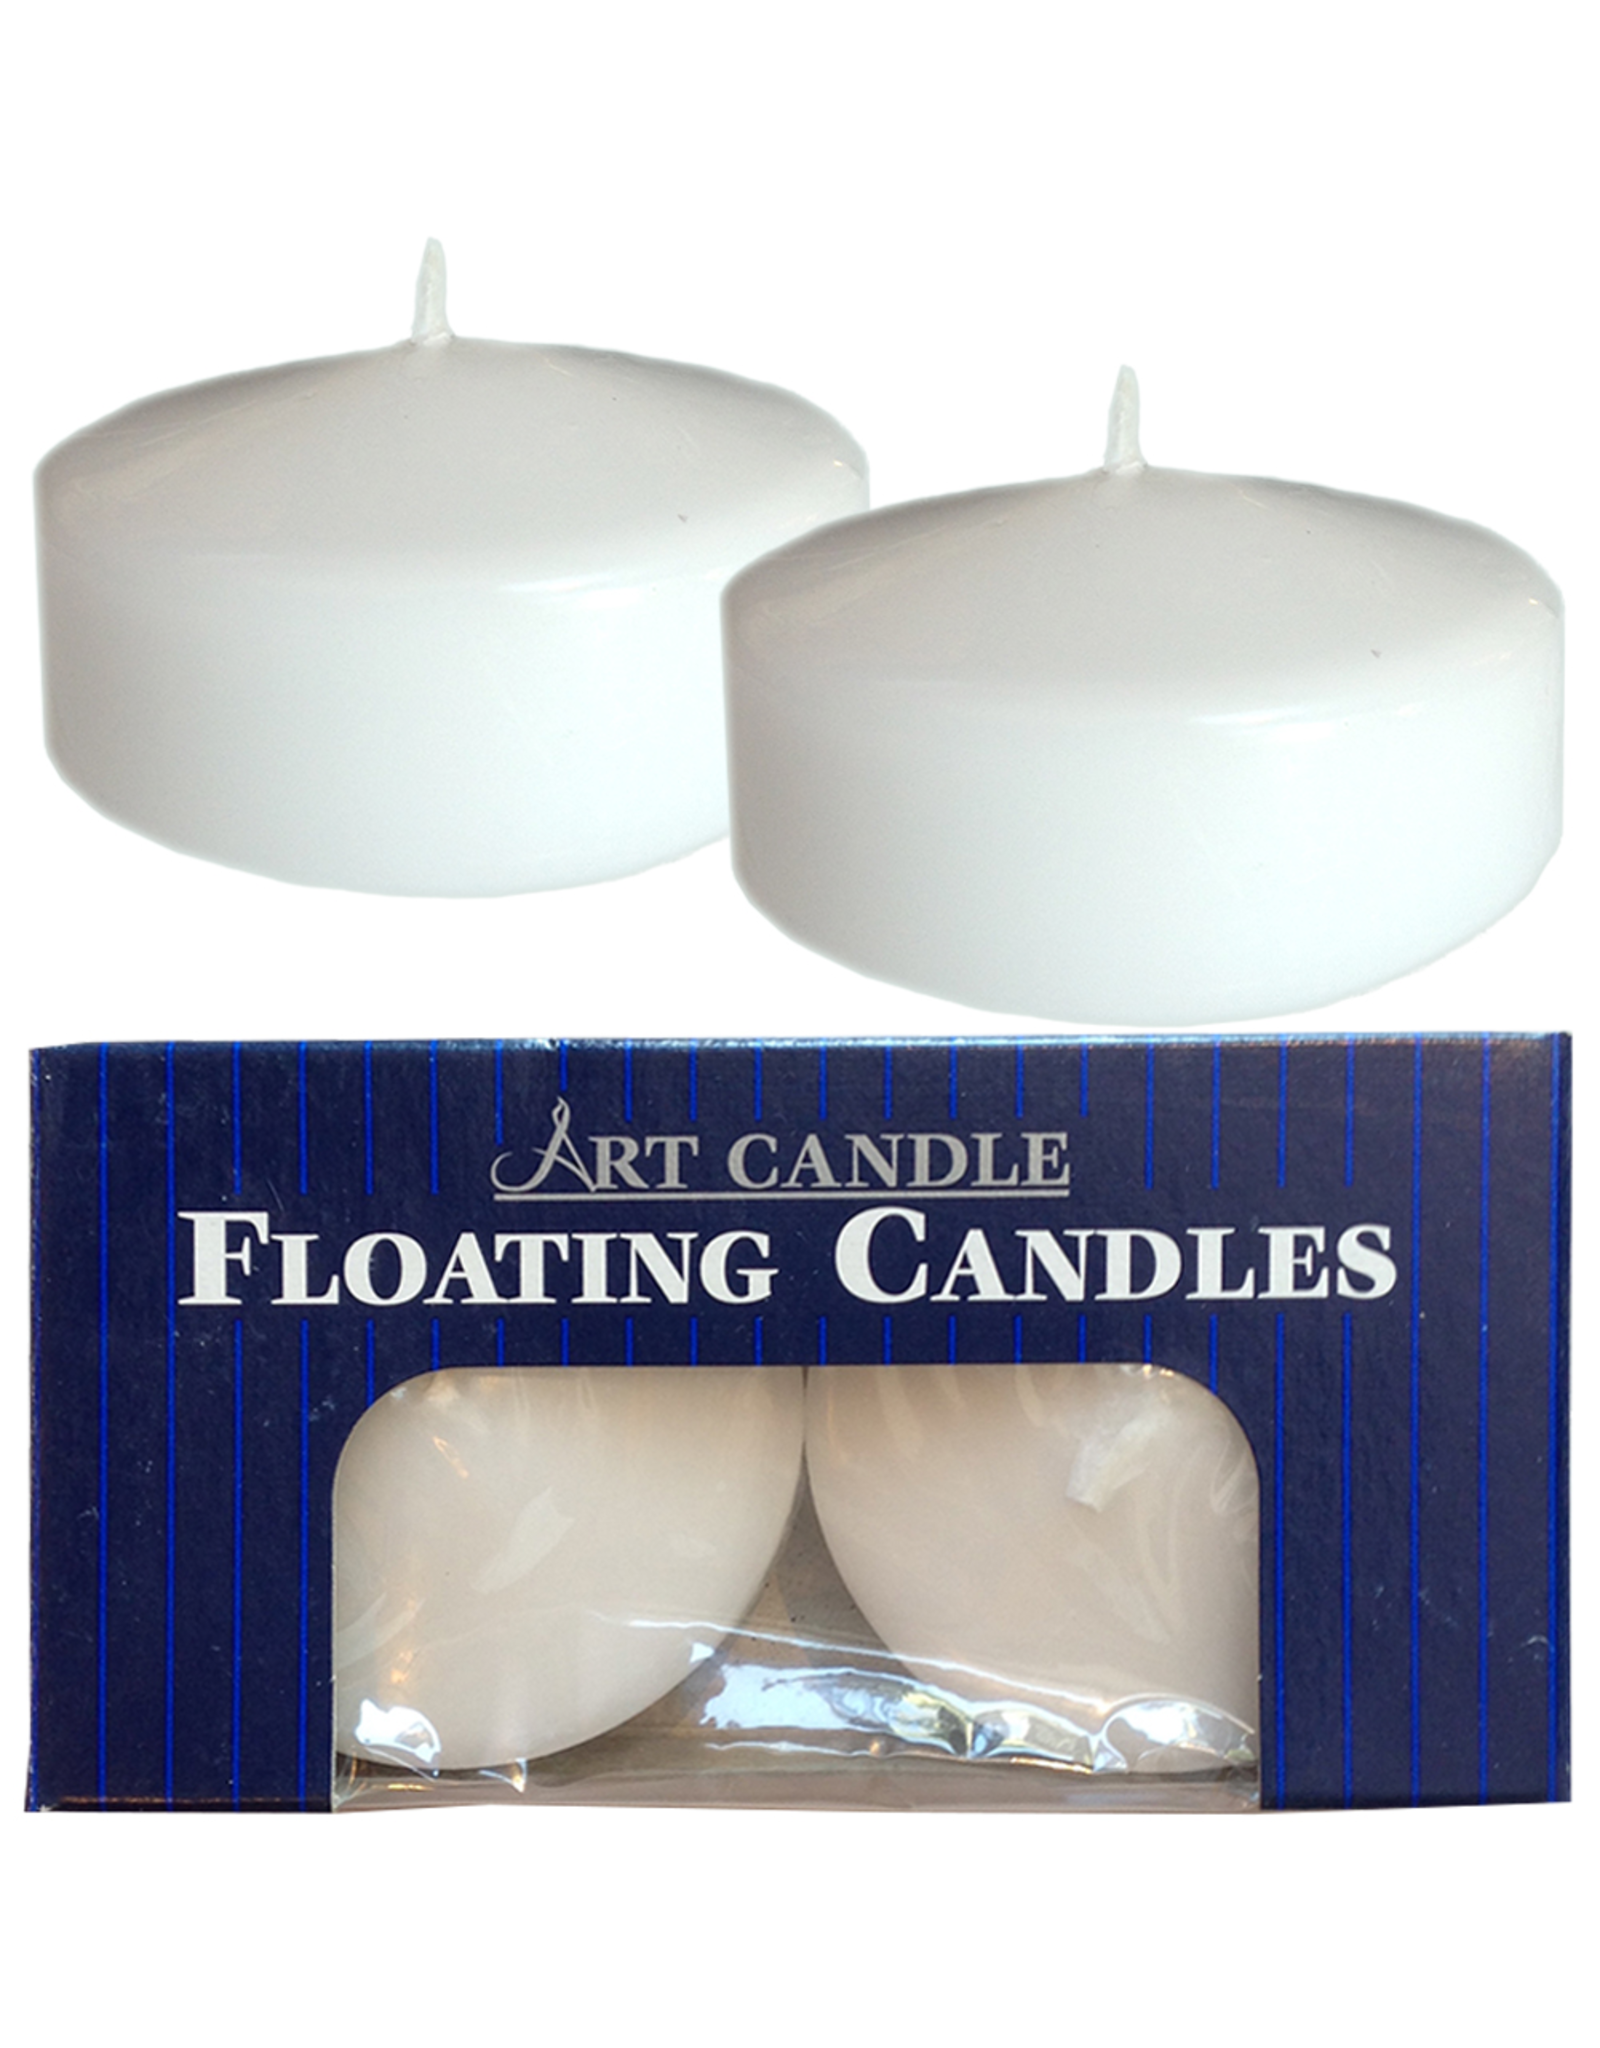 Ganz Floating Candles Set of 2